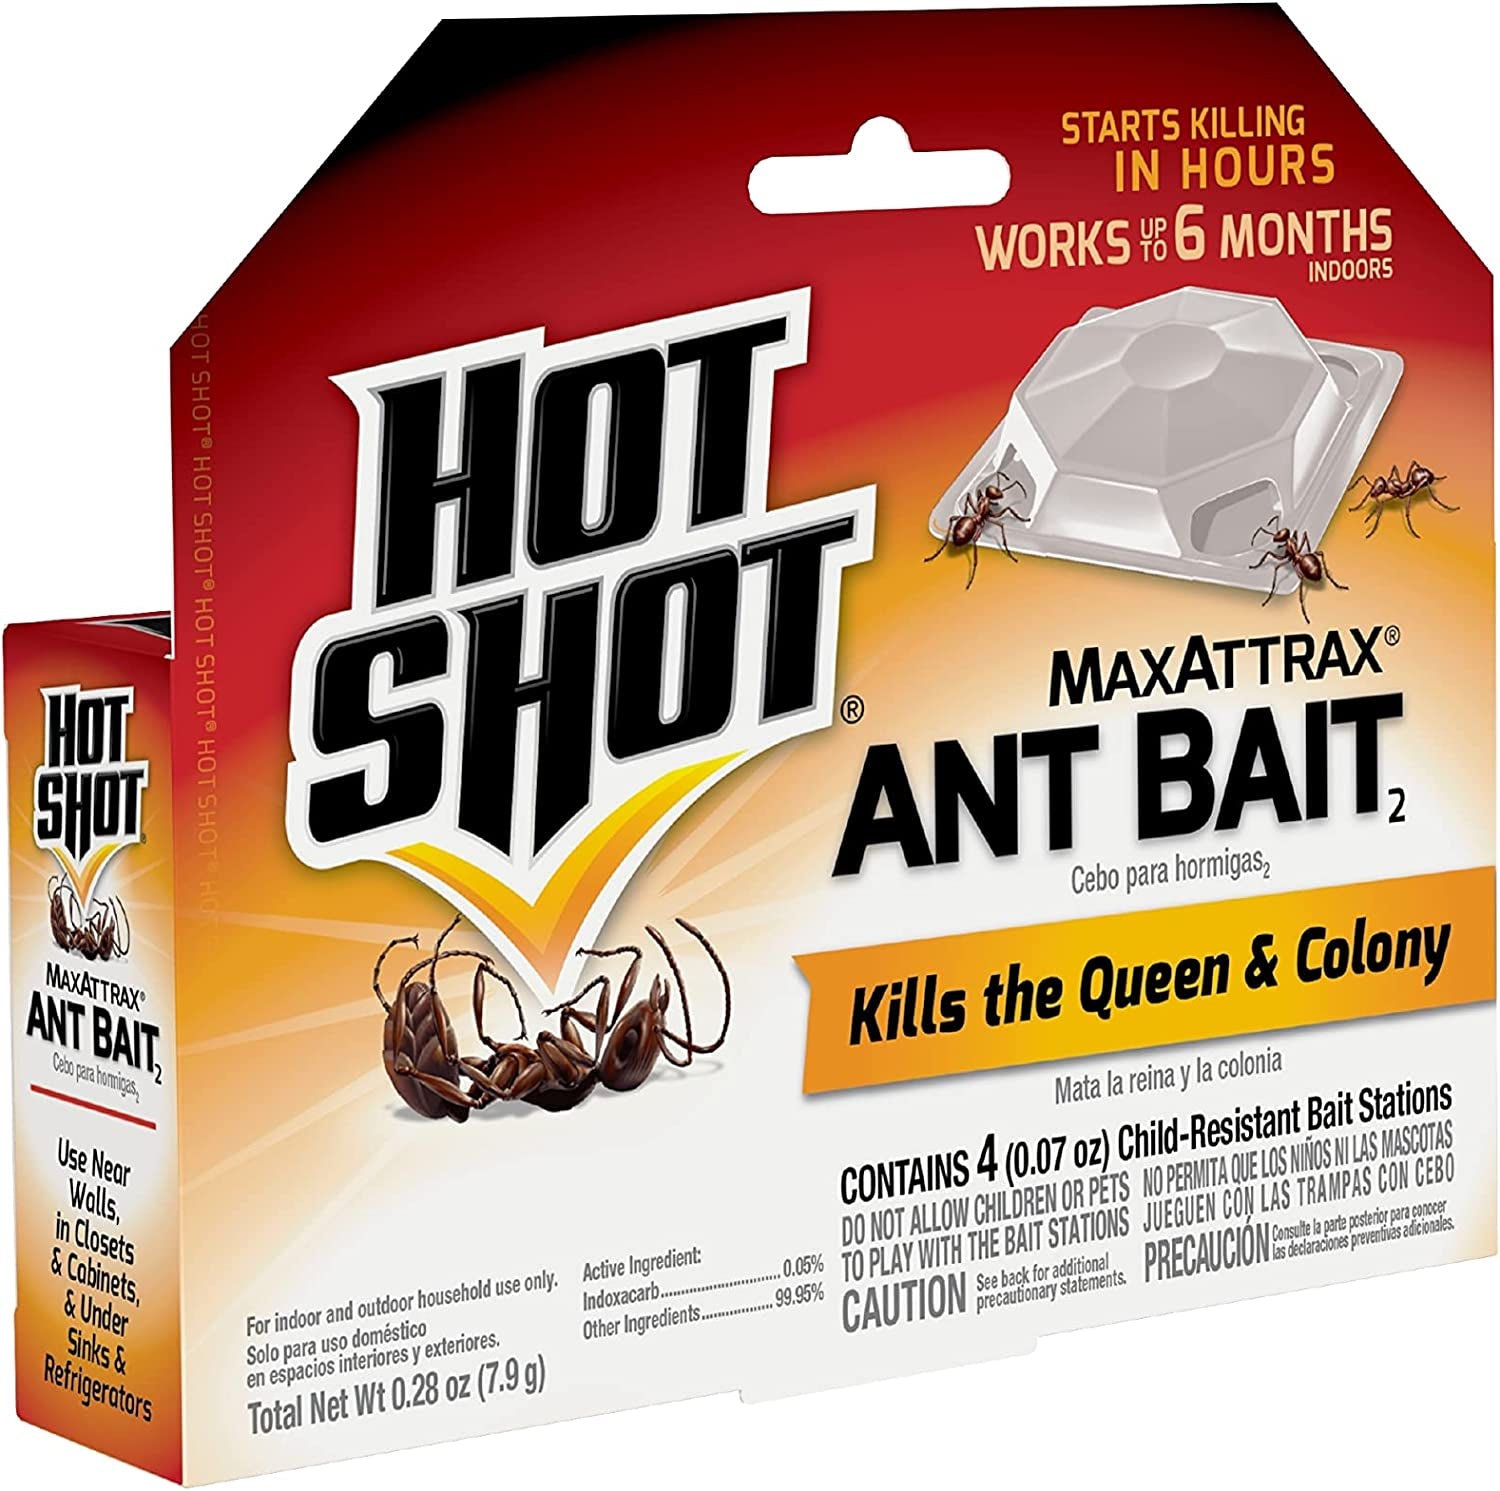 Hot Shot Ant Bait